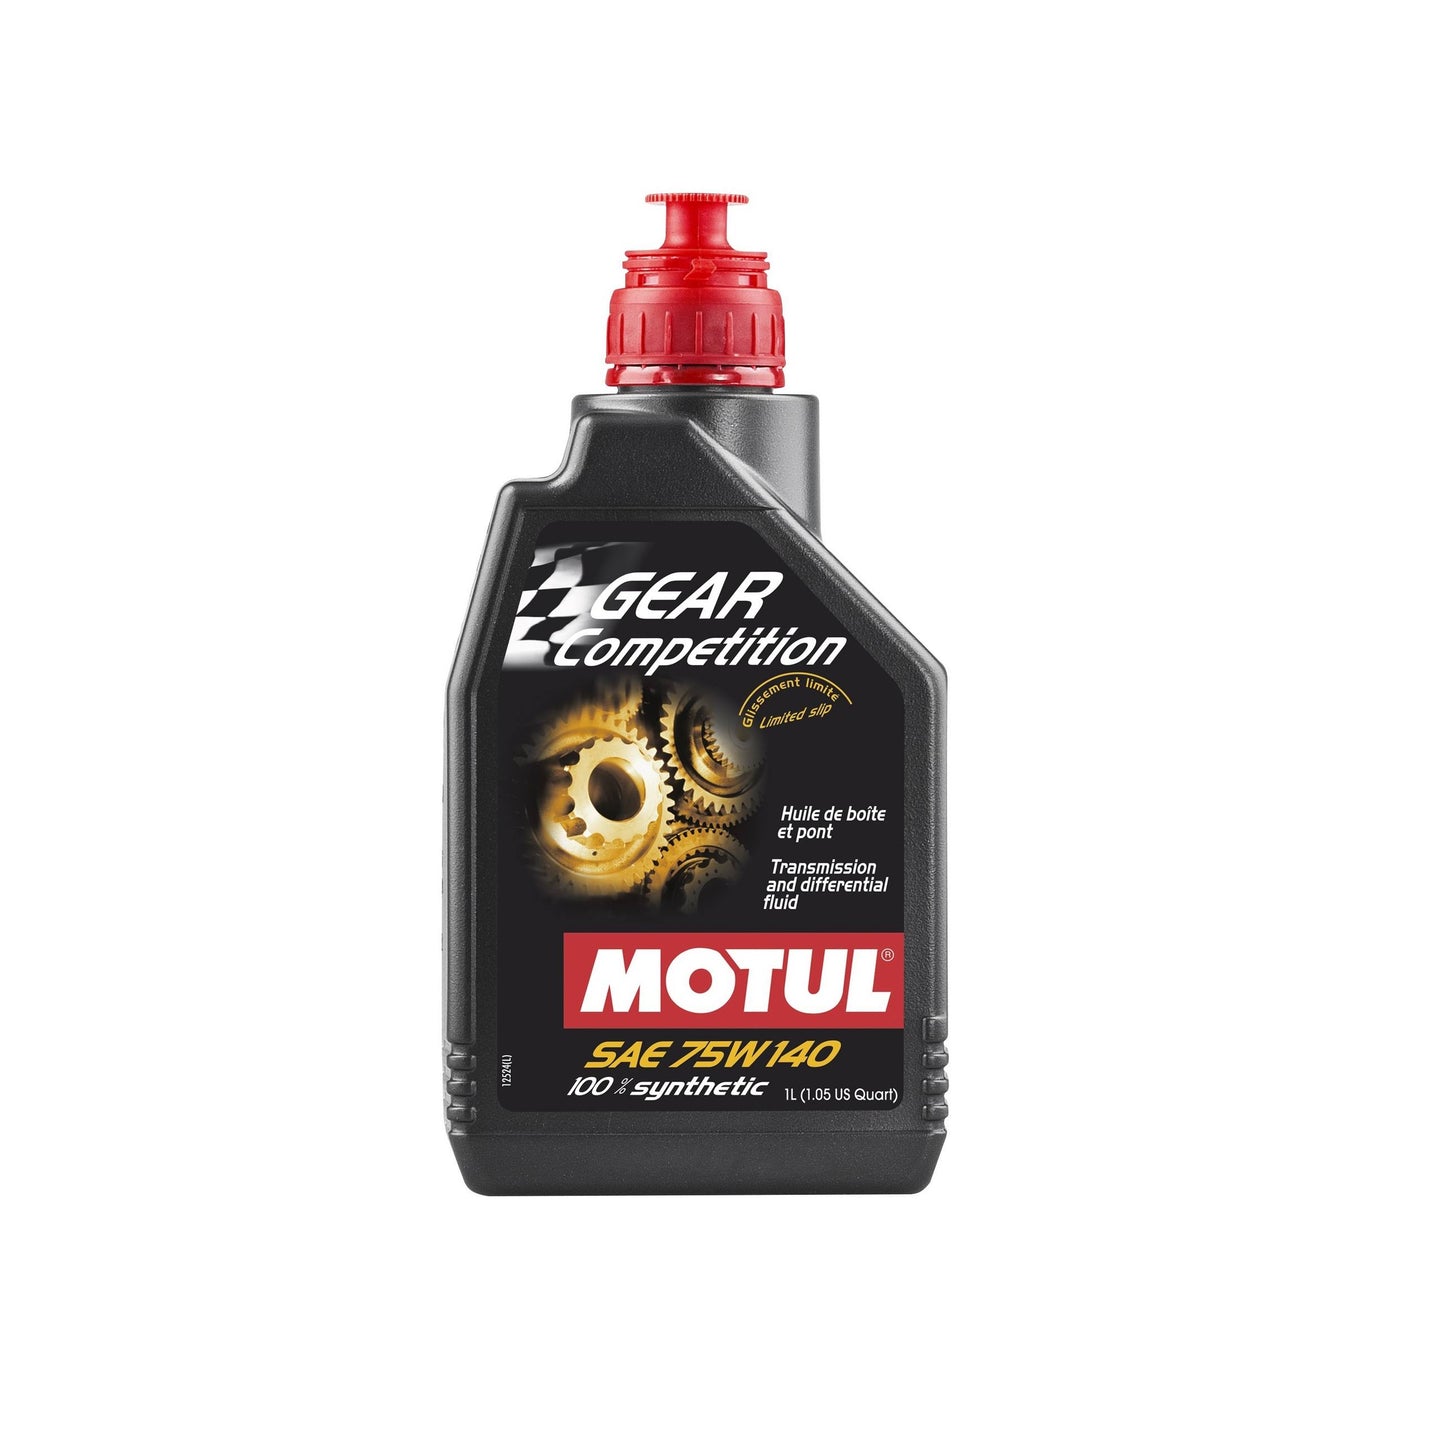 MOTUL - Gear Oil 100% Synthetic